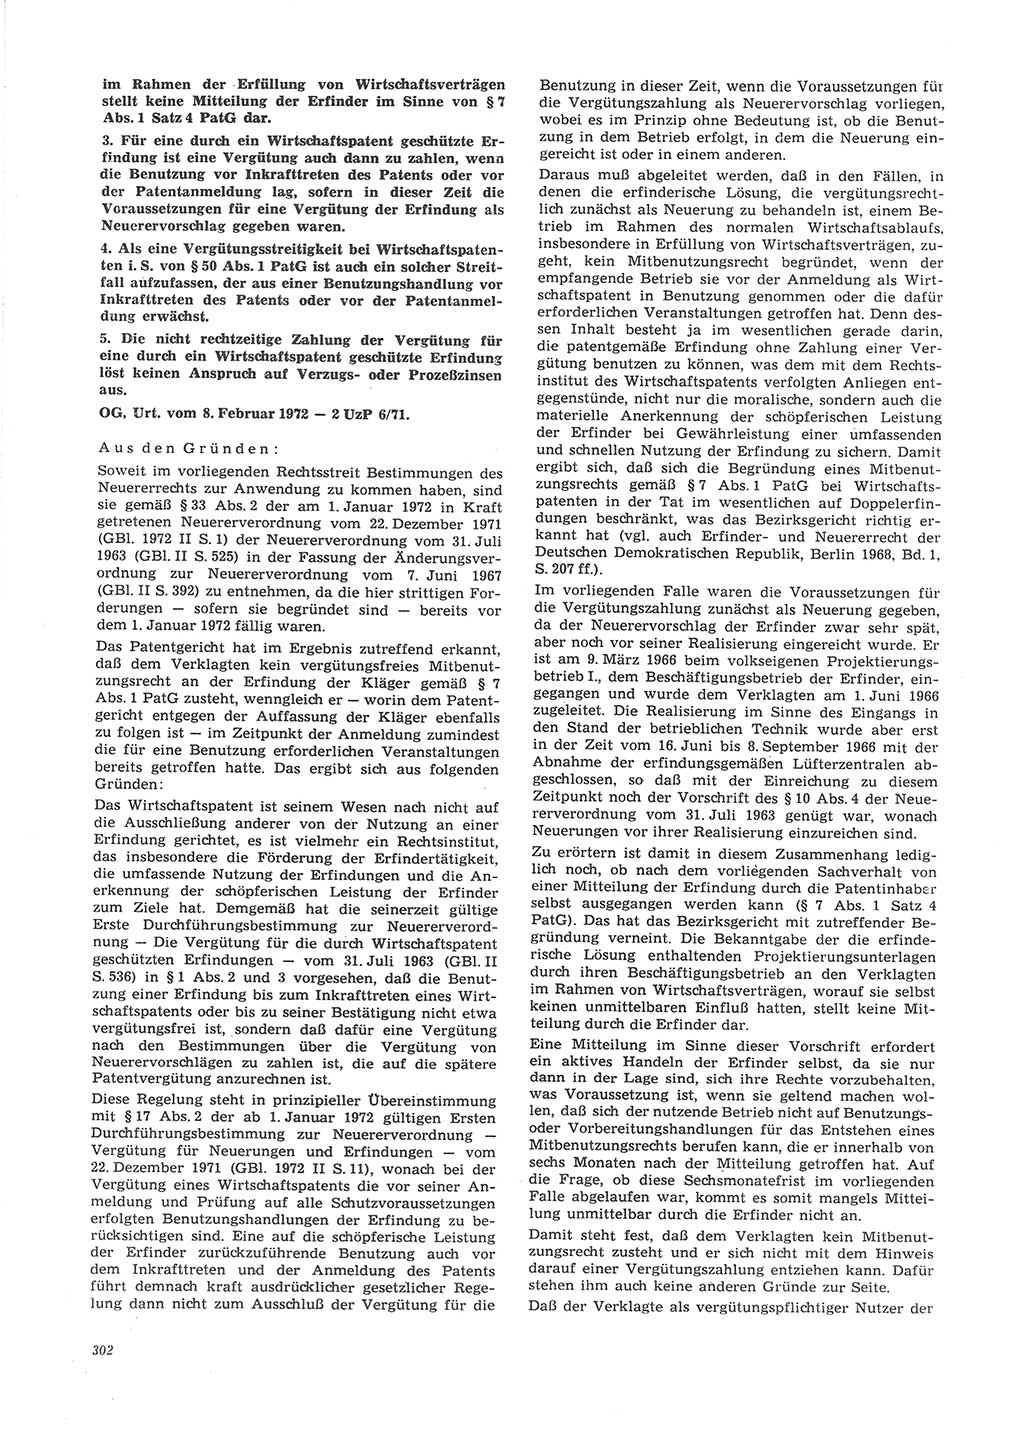 Neue Justiz (NJ), Zeitschrift für Recht und Rechtswissenschaft [Deutsche Demokratische Republik (DDR)], 26. Jahrgang 1972, Seite 302 (NJ DDR 1972, S. 302)